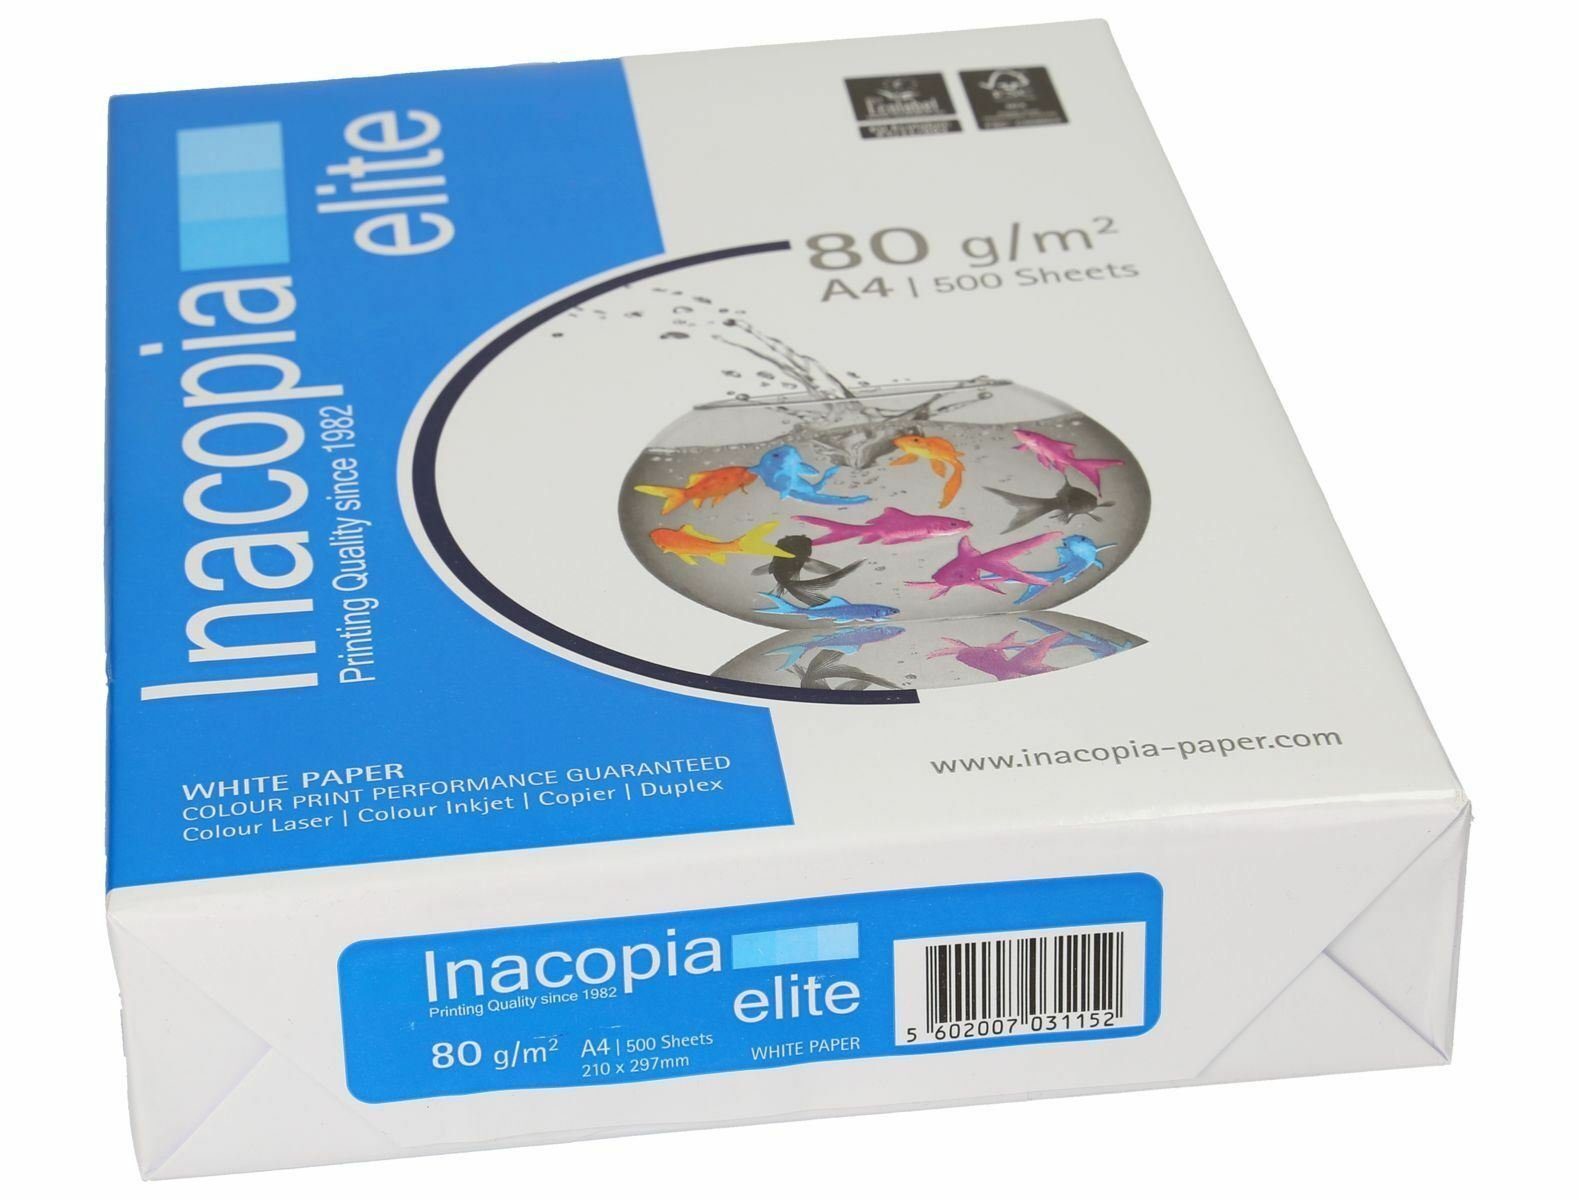 INACOPIA Premiumpapier 2500 Drucker- Inacopia Elite 80g/m² Blatt Kopierpapier DIN-A4 und weiß